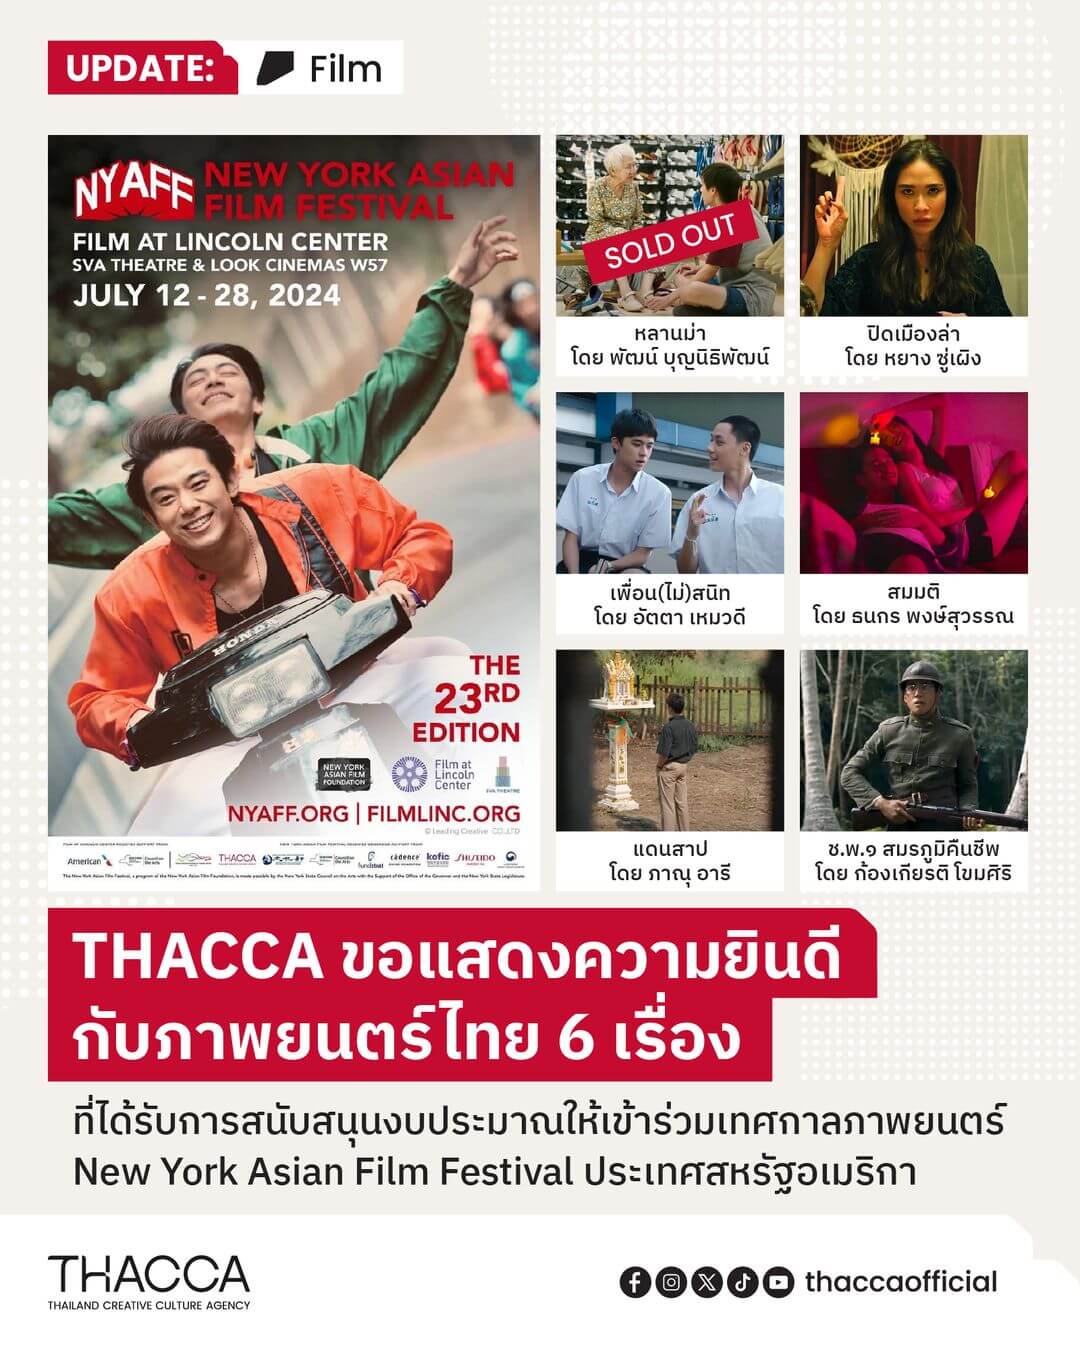 THACCA ขอแสดงความยินดีกับภาพยนตร์ไทย 6 เรื่องที่ได้รับการคัดเลือกและสนับสนุนงบประมาณให้เข้าร่วมเทศกาลภาพยนตร์ New York Asian Film Festival